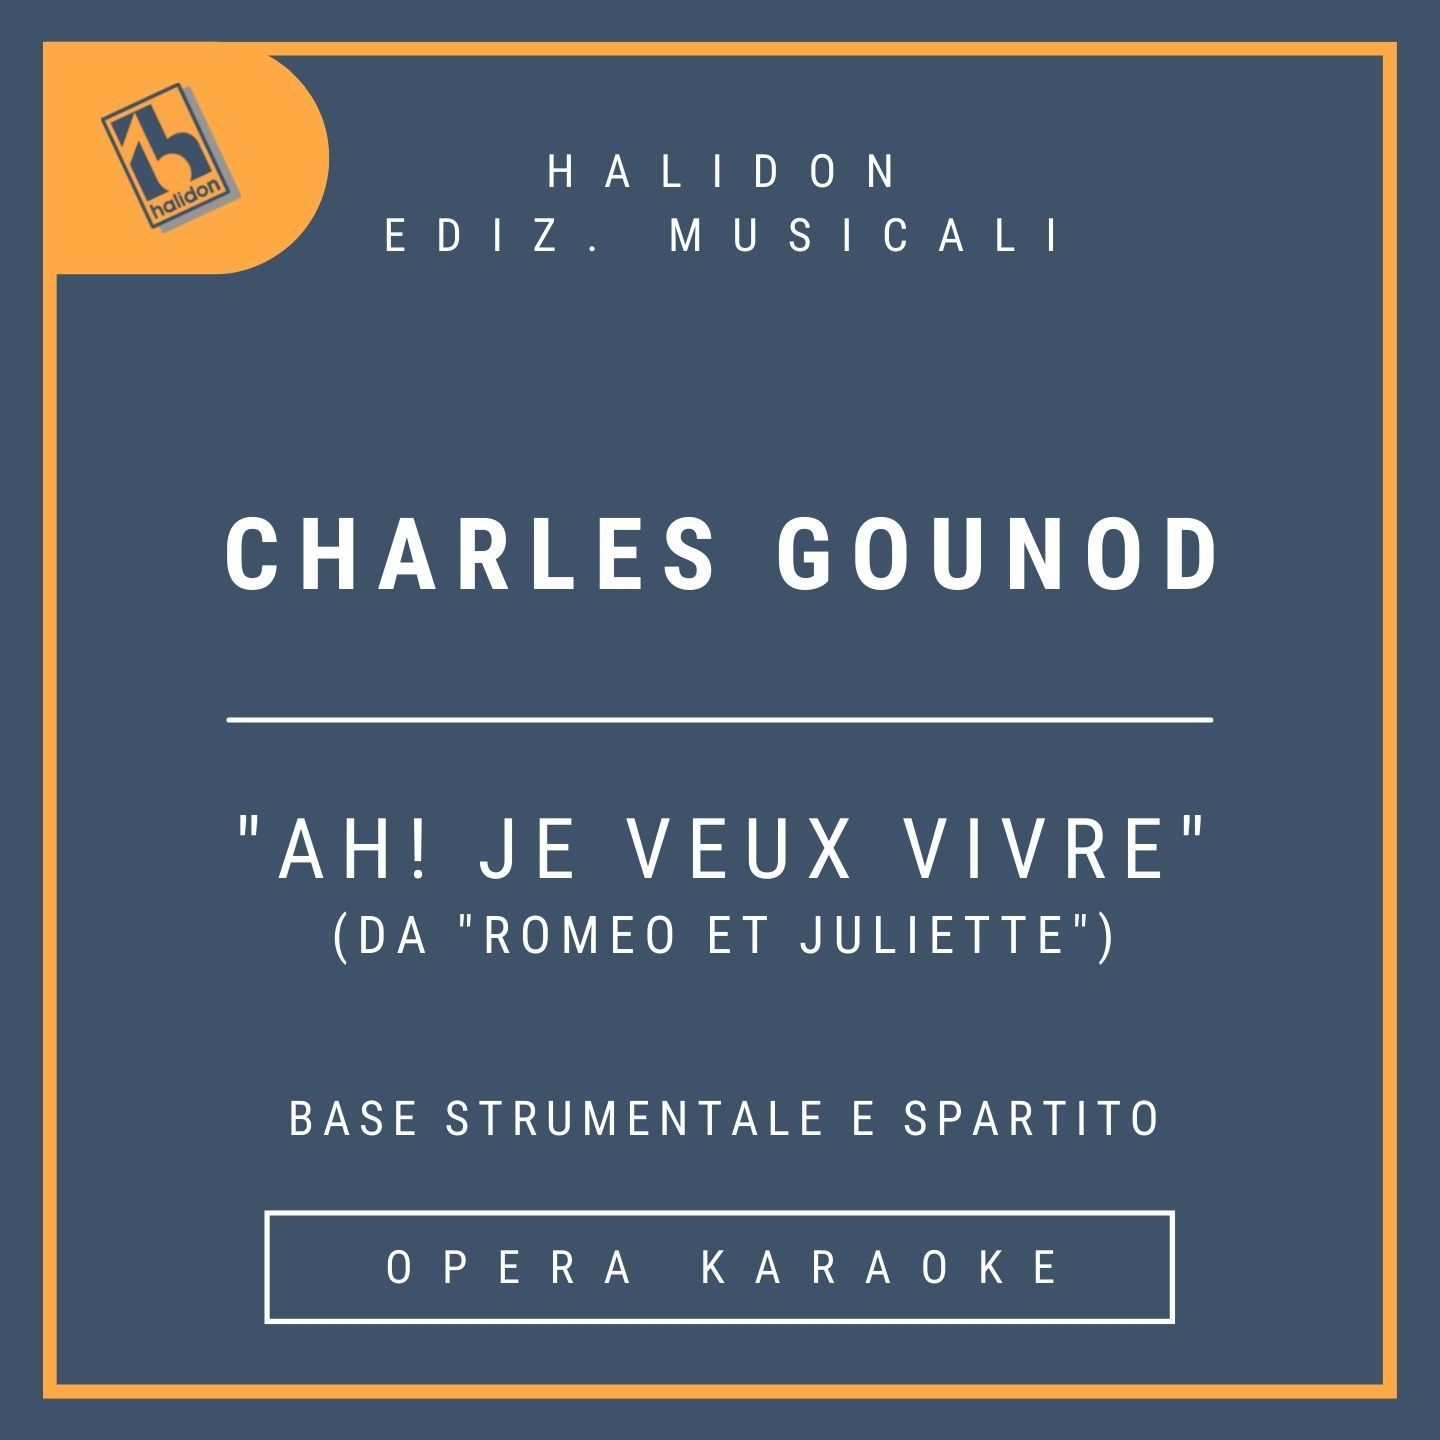 Charles Gounod - Ah! Je veux vivre (da 'Romeo e Juliette') - Arietta di Juliette (soprano leggero-mezzosoprano) - Base strumentale + spartito